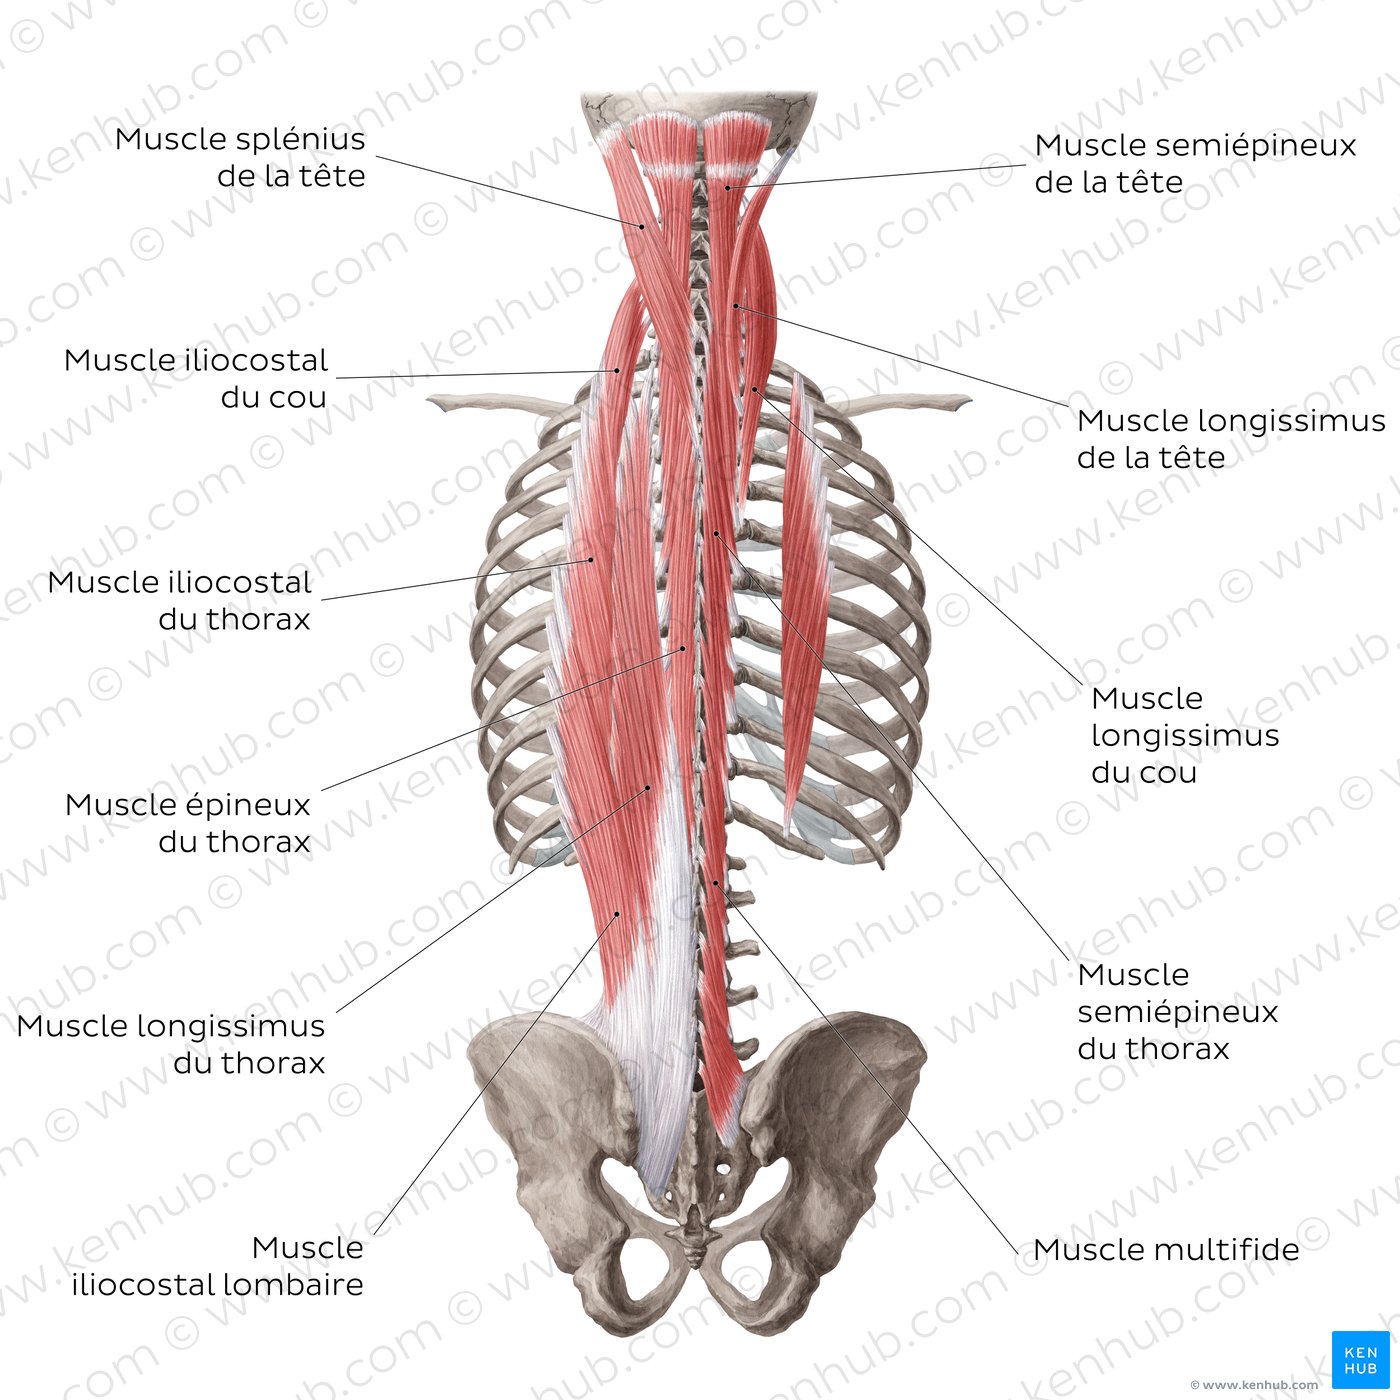 Les couches superficielles et intermédiaires des muscles profonds du dos